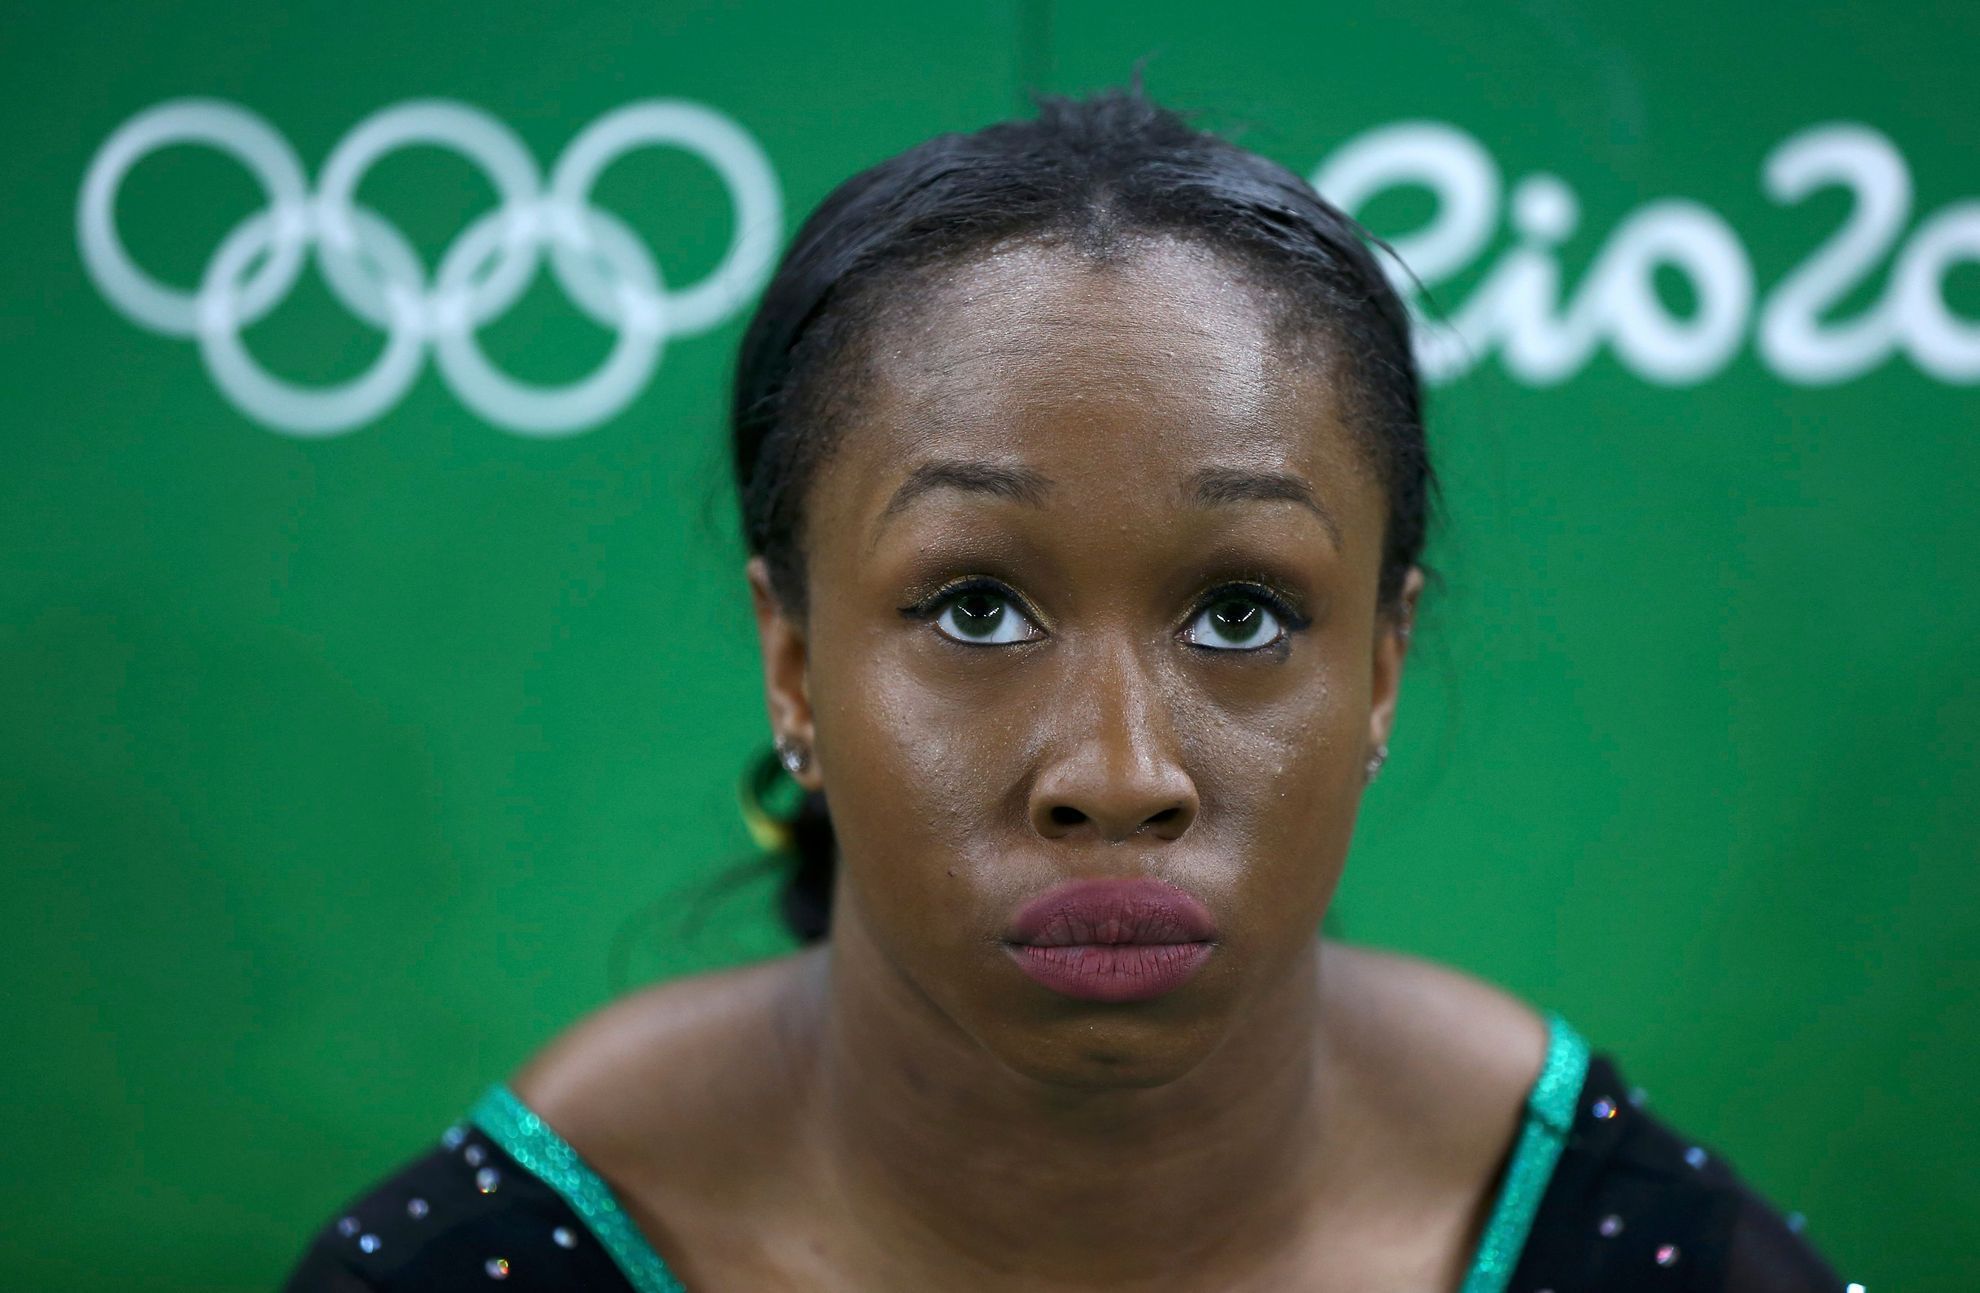 OH 2016, sportovní gymnastika:  Toni-Ann Williamsová, Jamajka